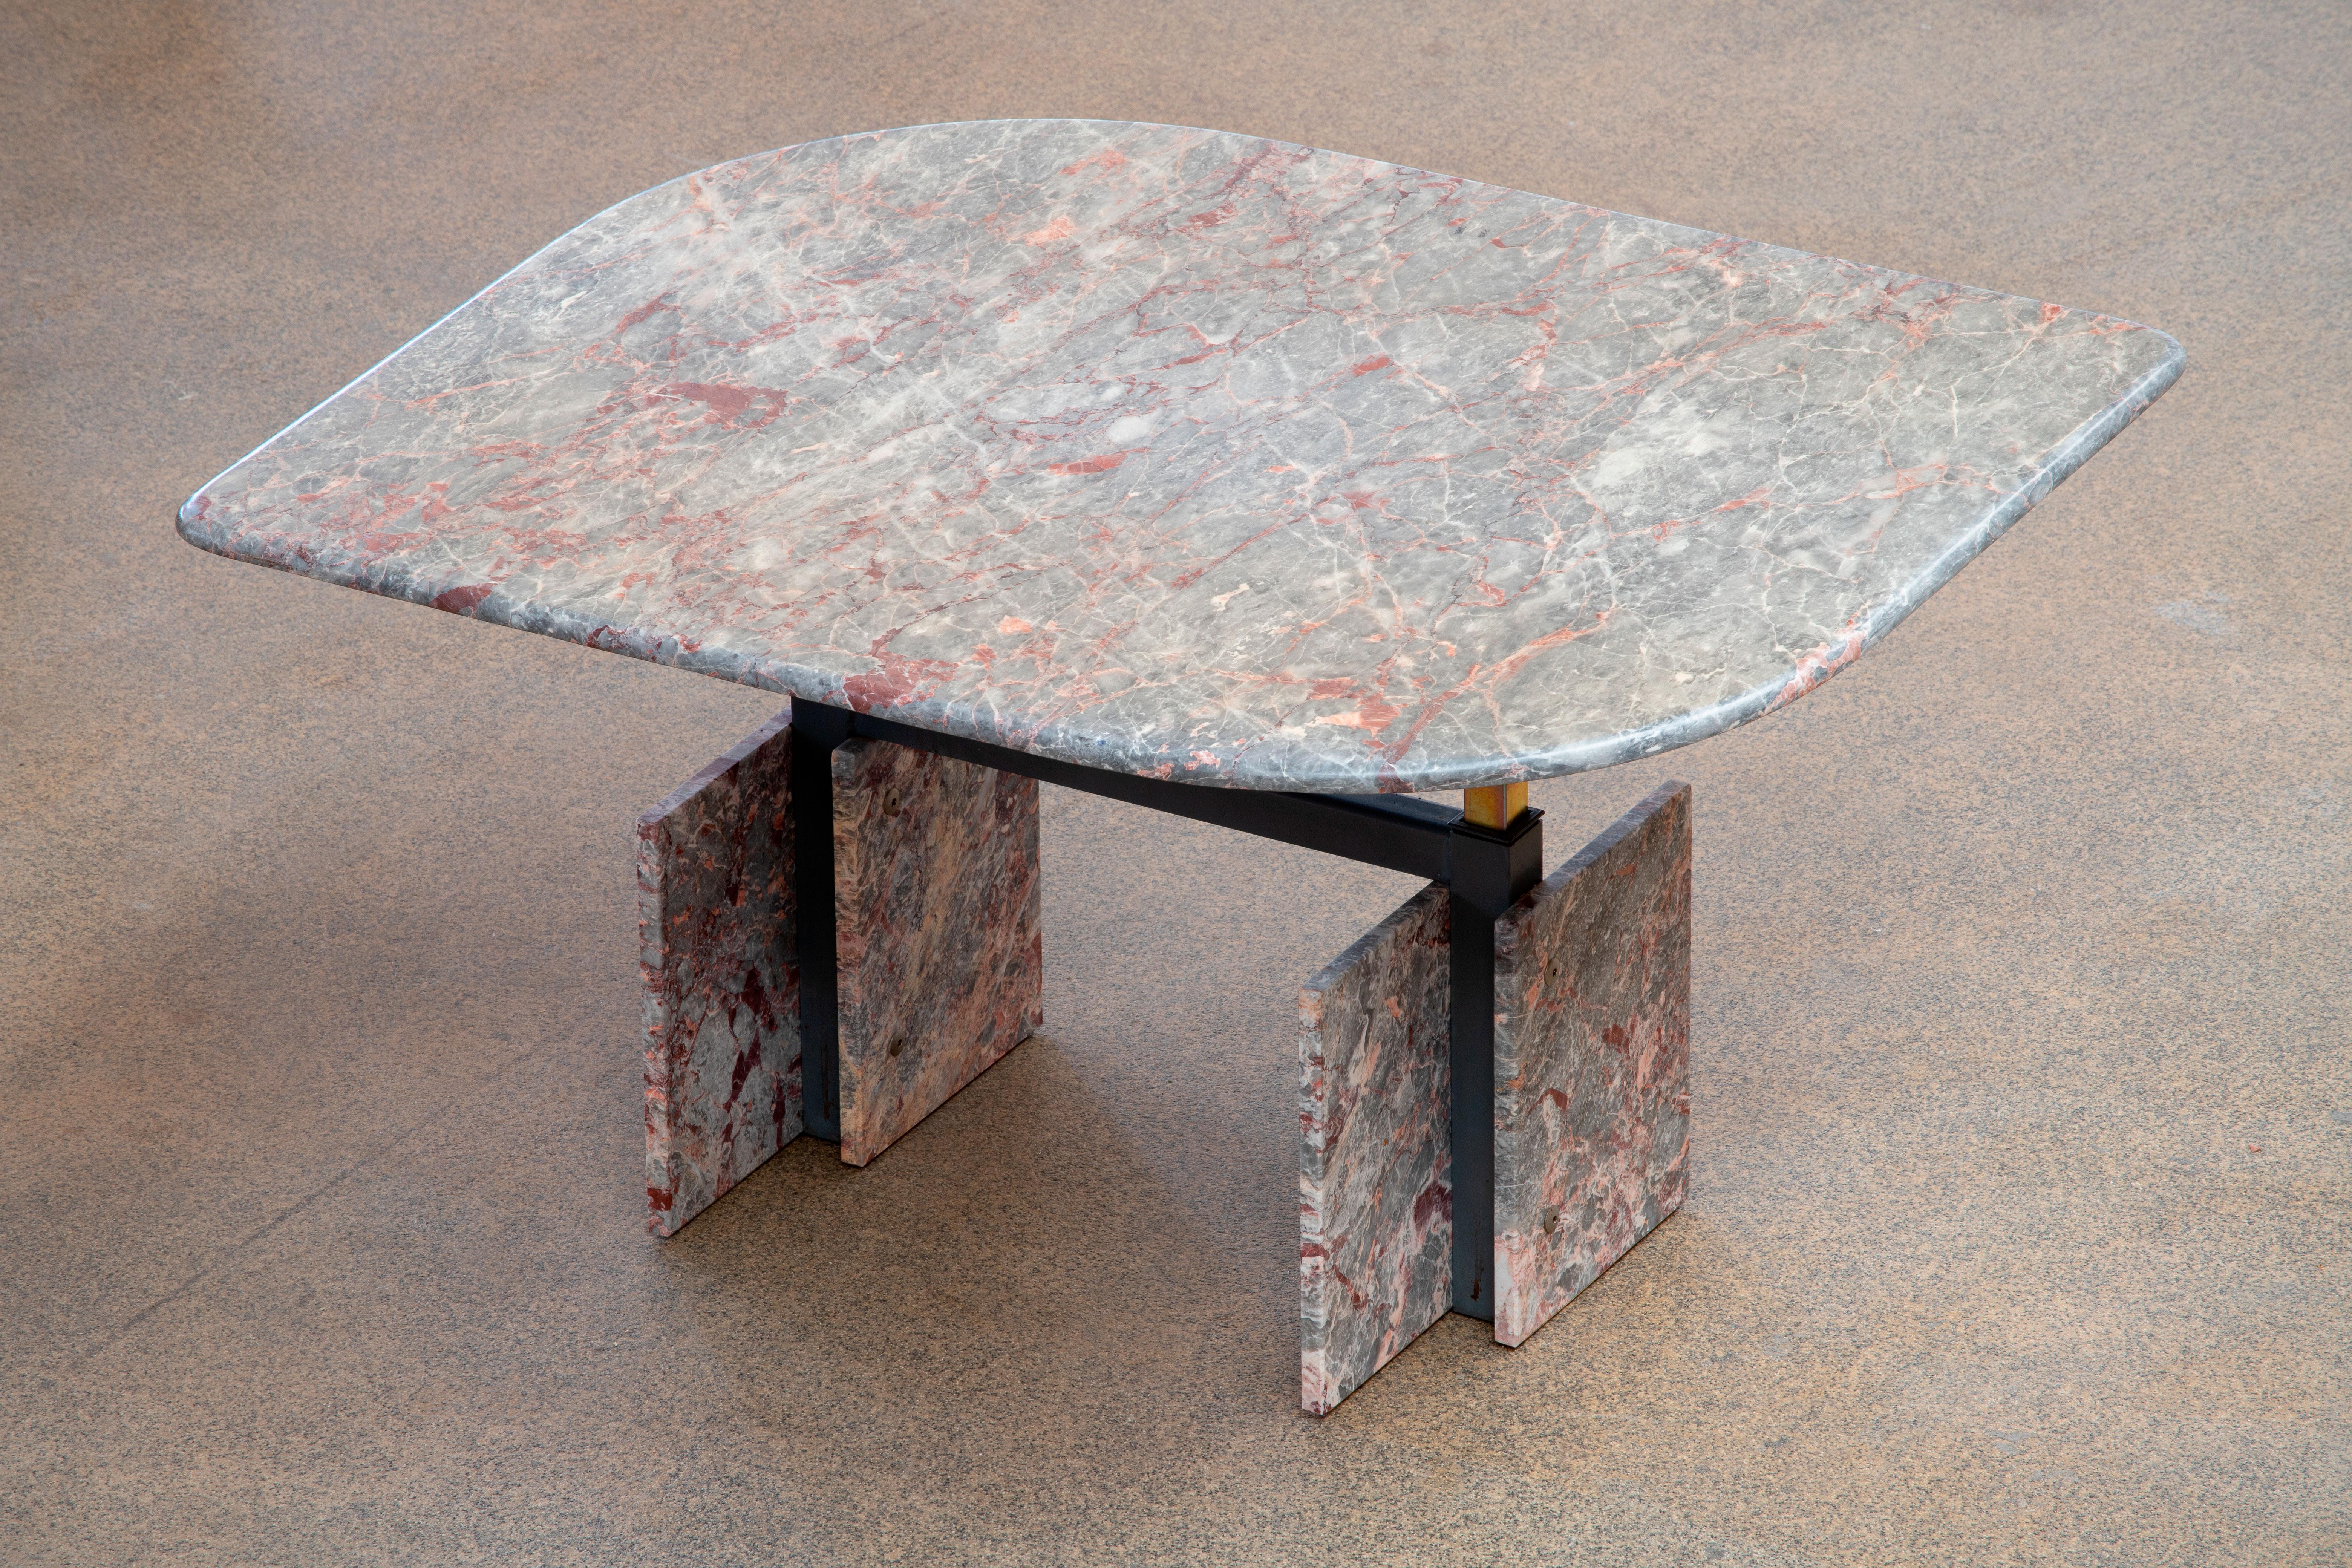 Schöner Tisch aus grauem, beigem und rosa Marmor.

Die schwere, augenförmige, höhenverstellbare Platte ruht auf vier Marmorblöcken mit einer Metallstruktur dazwischen.